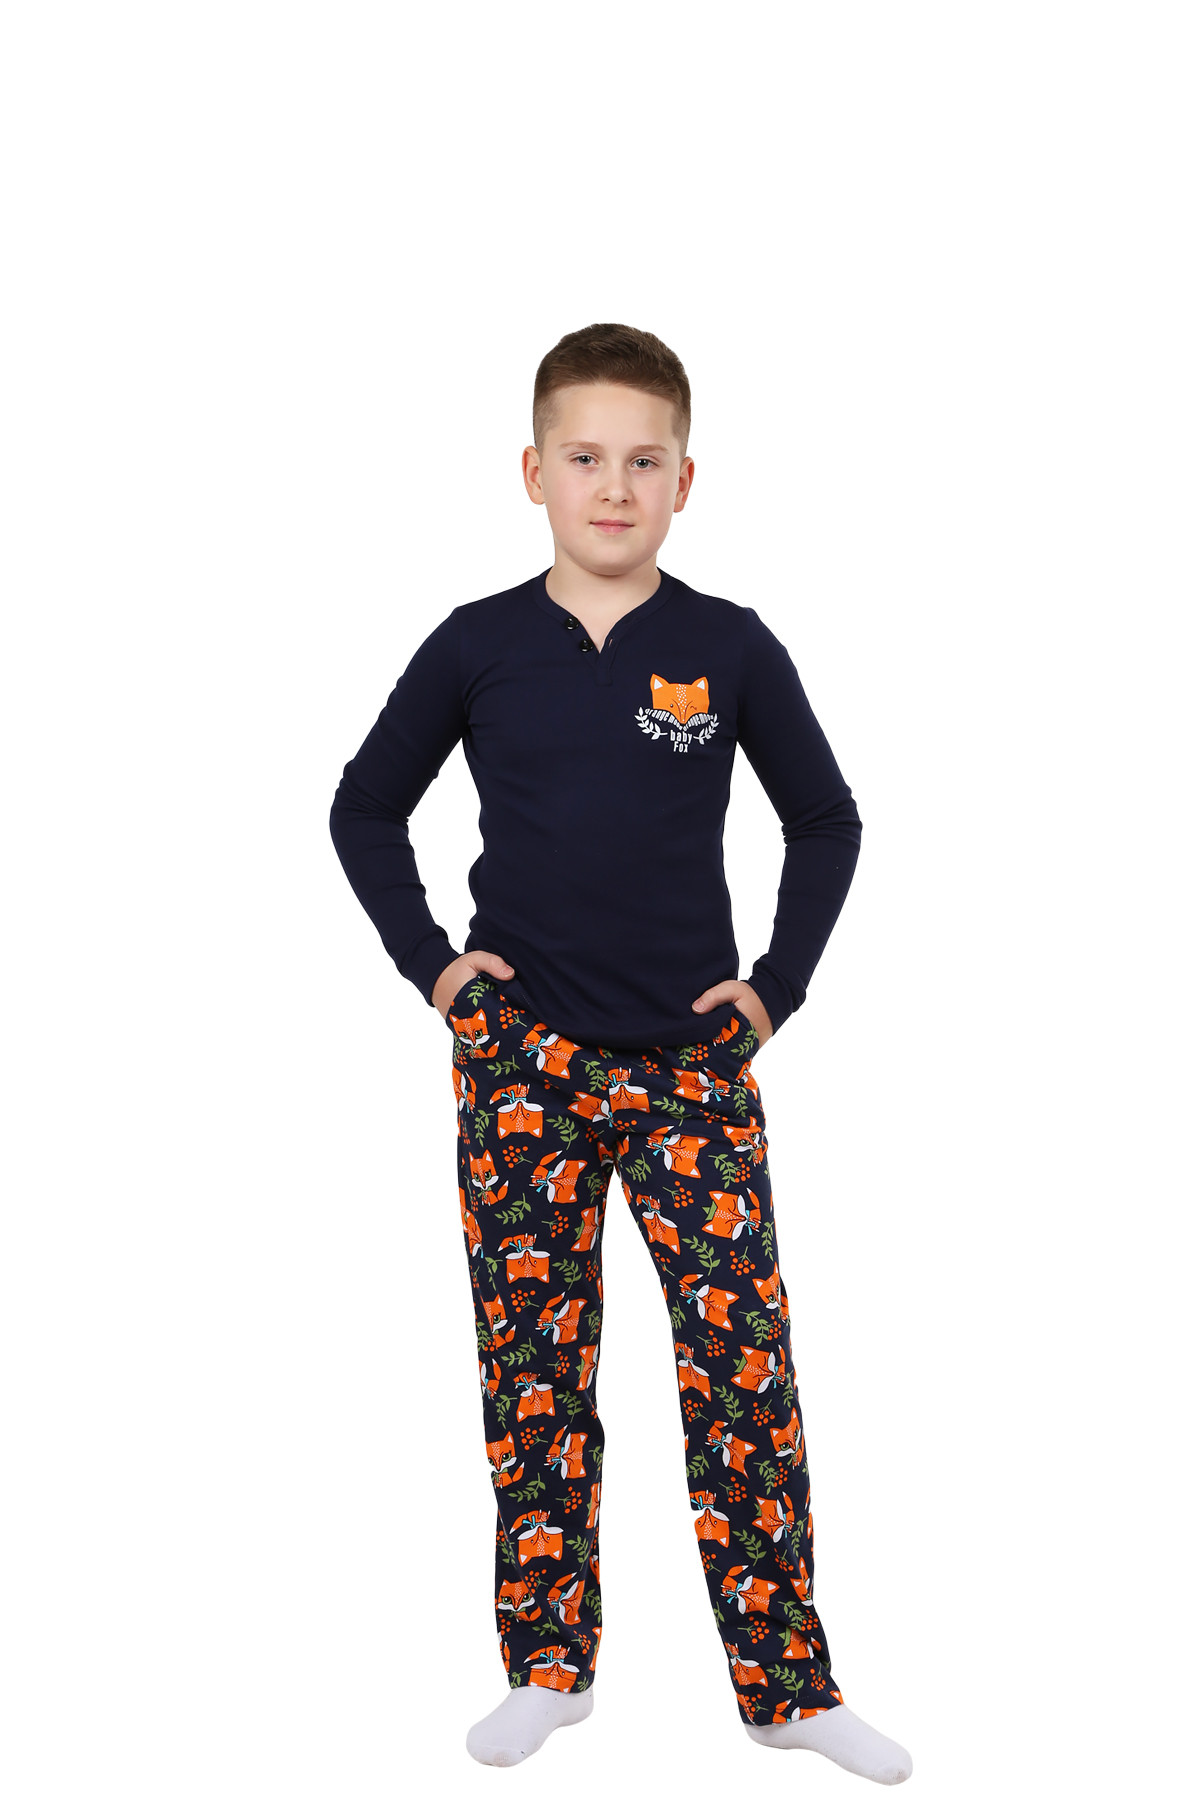 Детская пижама Лисенок Цвет: Темно-Синий (11 лет), размер 11 лет otj640781 Детская пижама Лисенок Цвет: Темно-Синий (11 лет) - фото 1